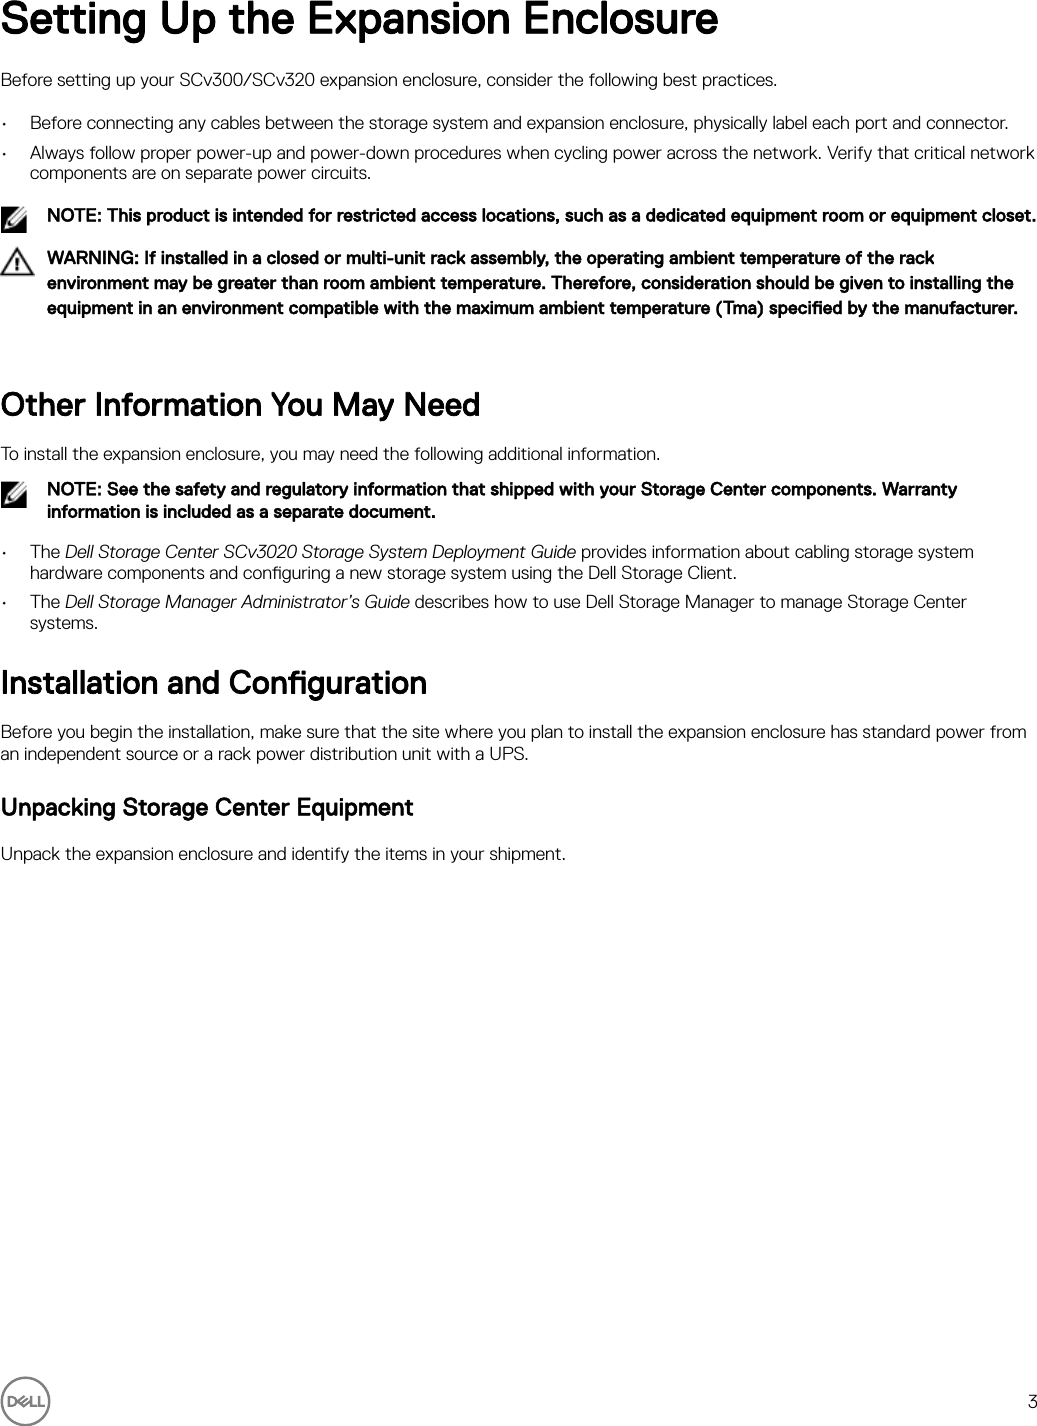 Page 3 of 8 - Dell Storage-scv300 Storage Center SCv300 And SCv320 Expansion Enclosure Getting Started Guide User Manual  - Setup En-us